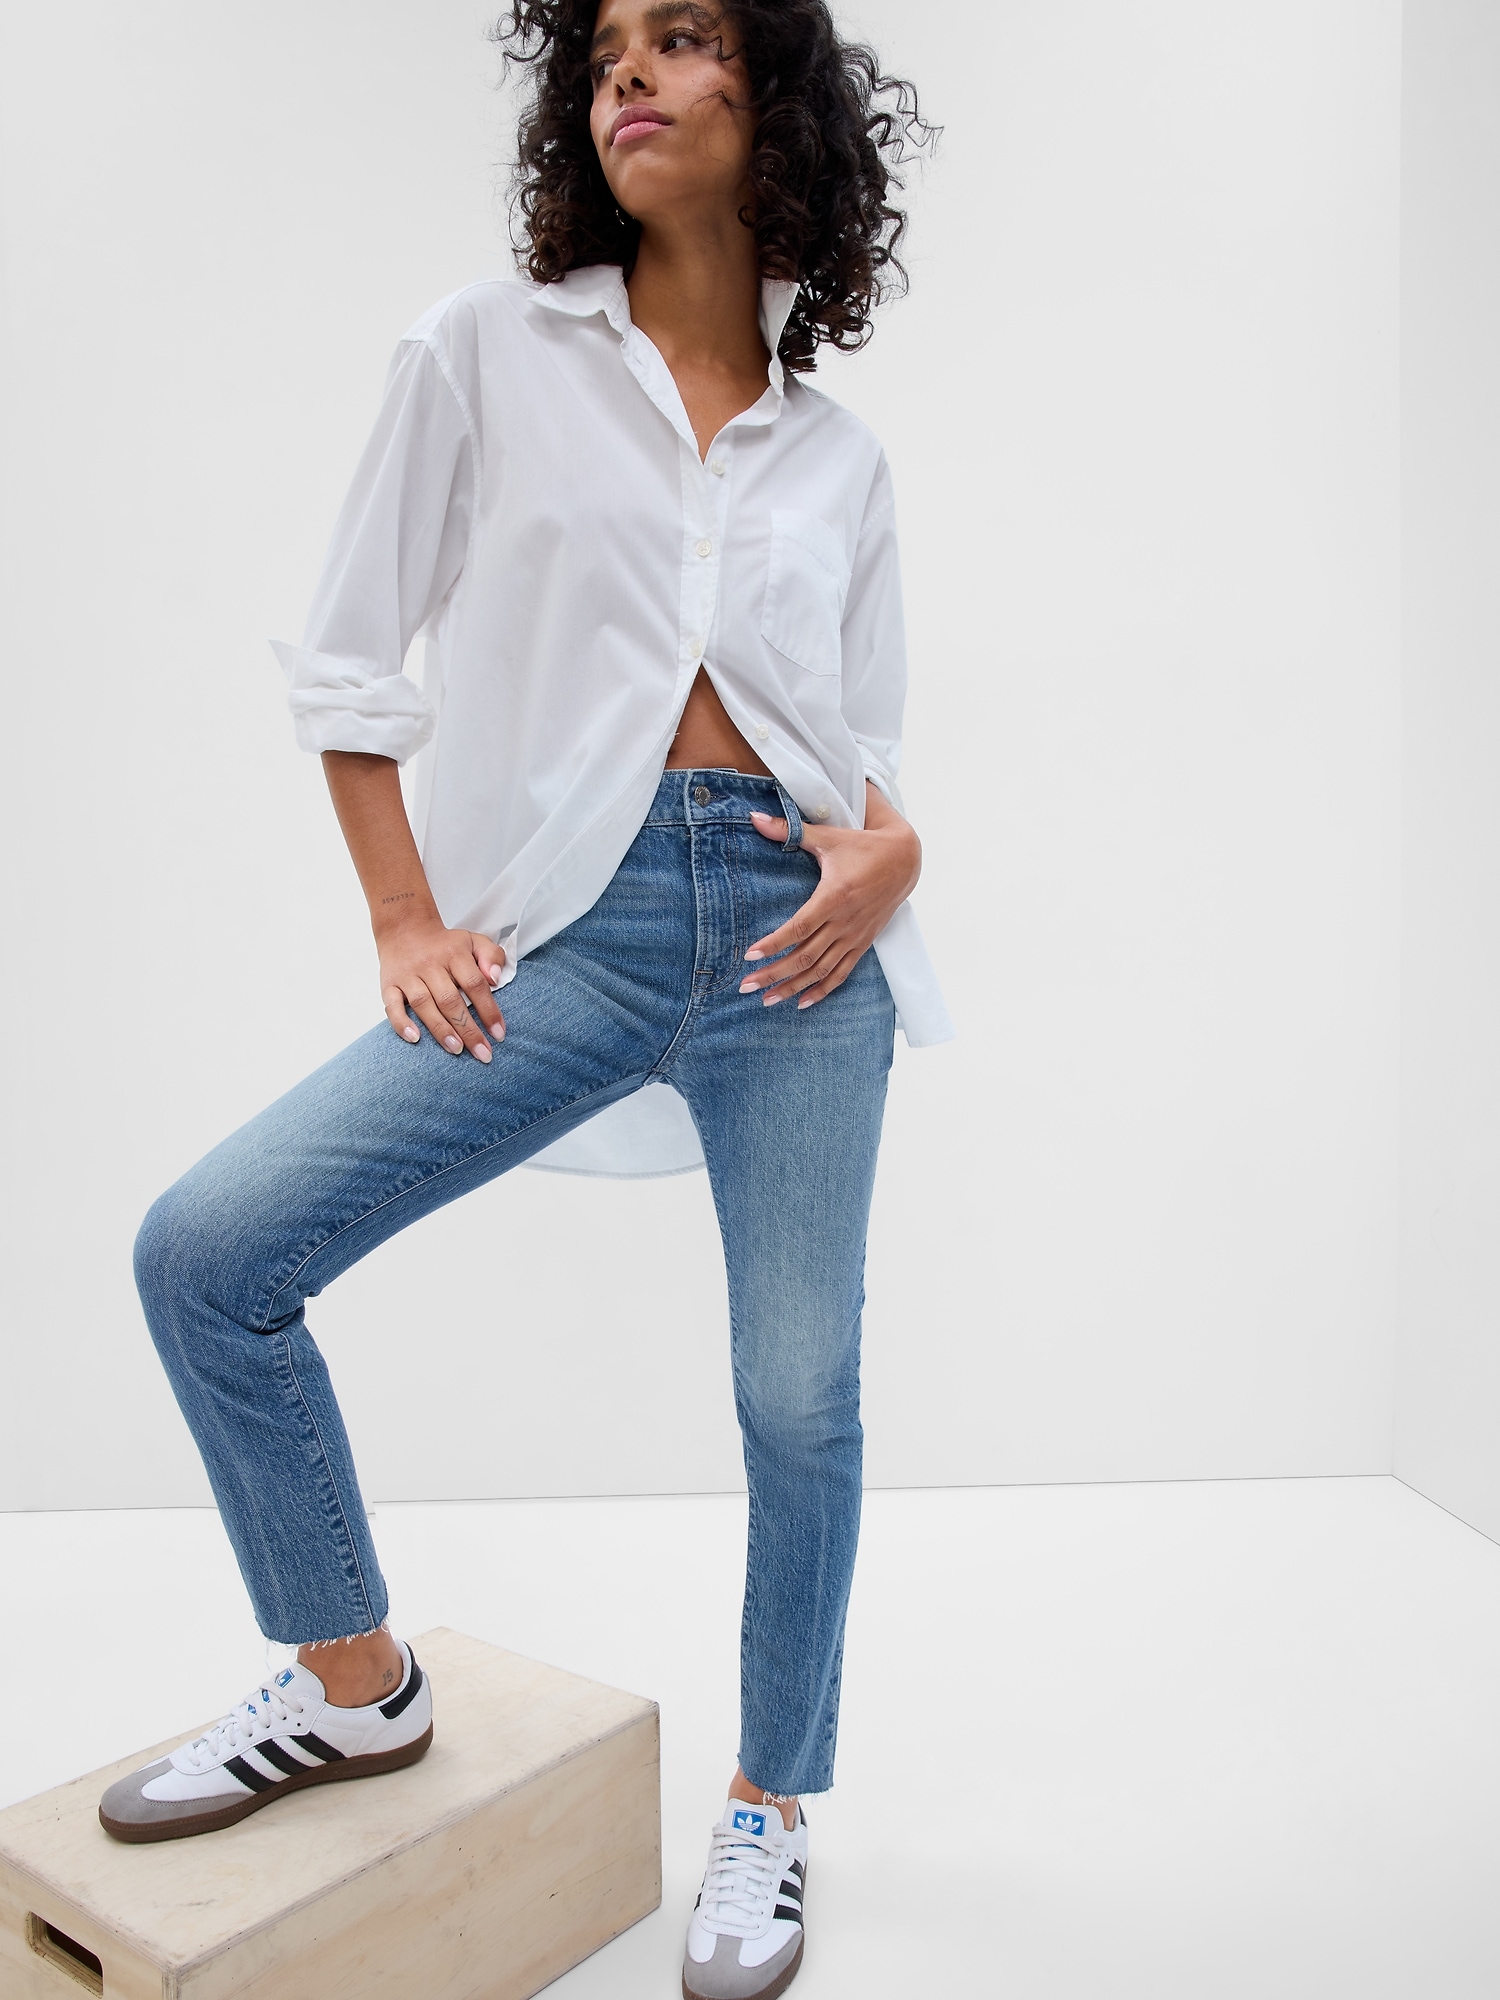 Aanvulling nietig gelijkheid Mid Rise Slim Boyfriend Jeans With Washwell | Gap Factory